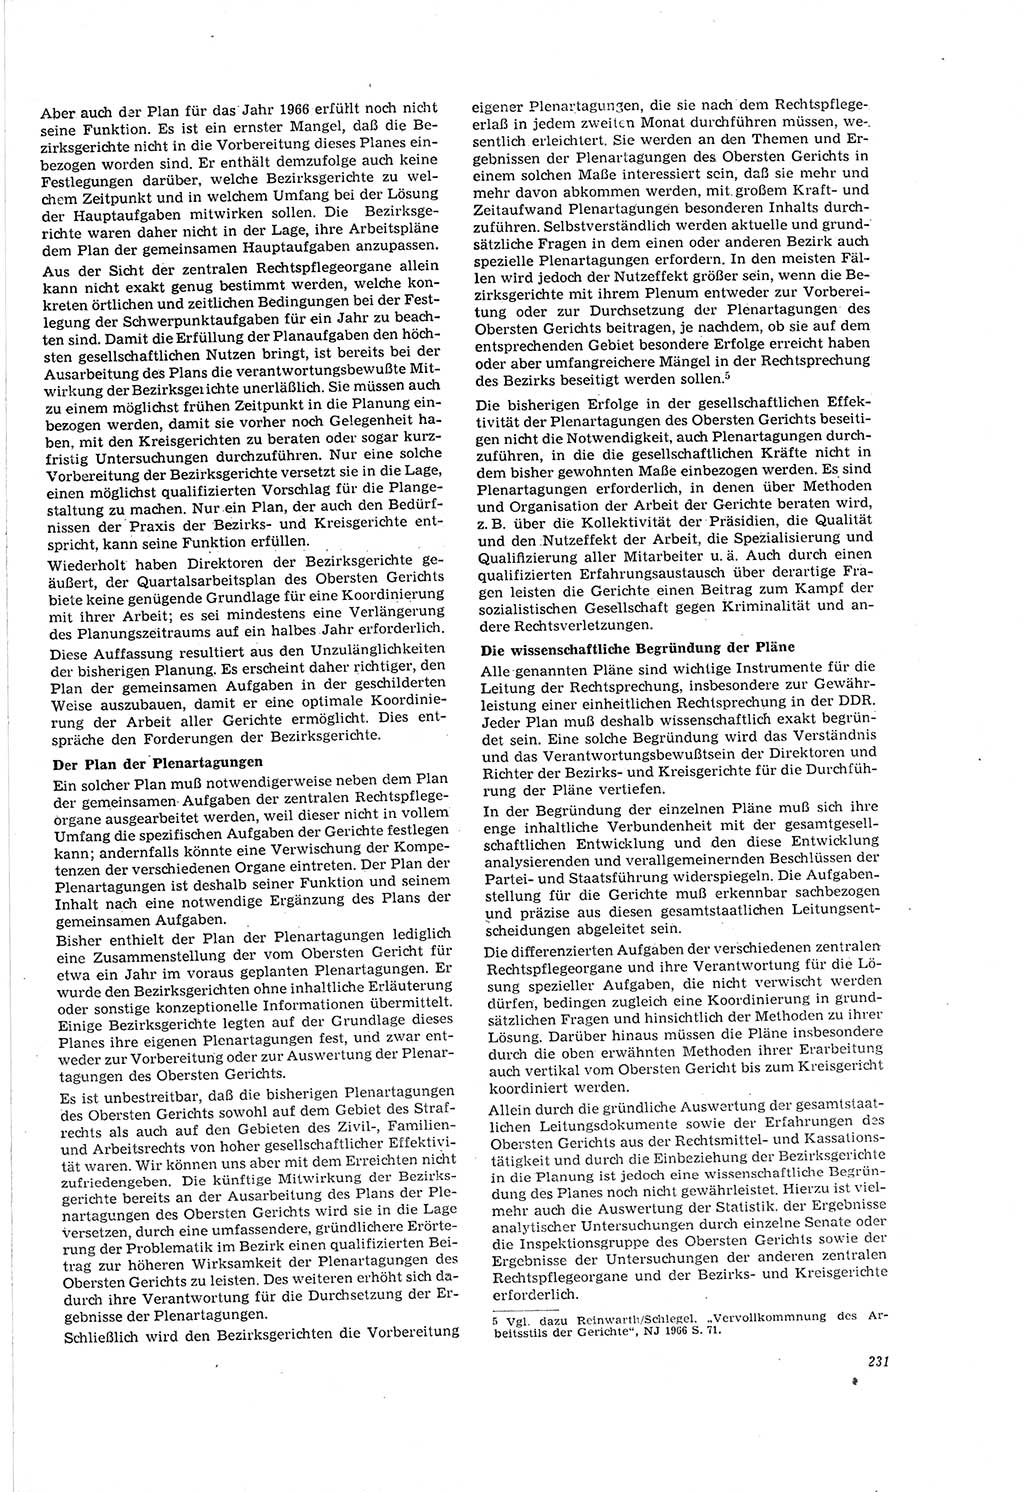 Neue Justiz (NJ), Zeitschrift für Recht und Rechtswissenschaft [Deutsche Demokratische Republik (DDR)], 20. Jahrgang 1966, Seite 231 (NJ DDR 1966, S. 231)